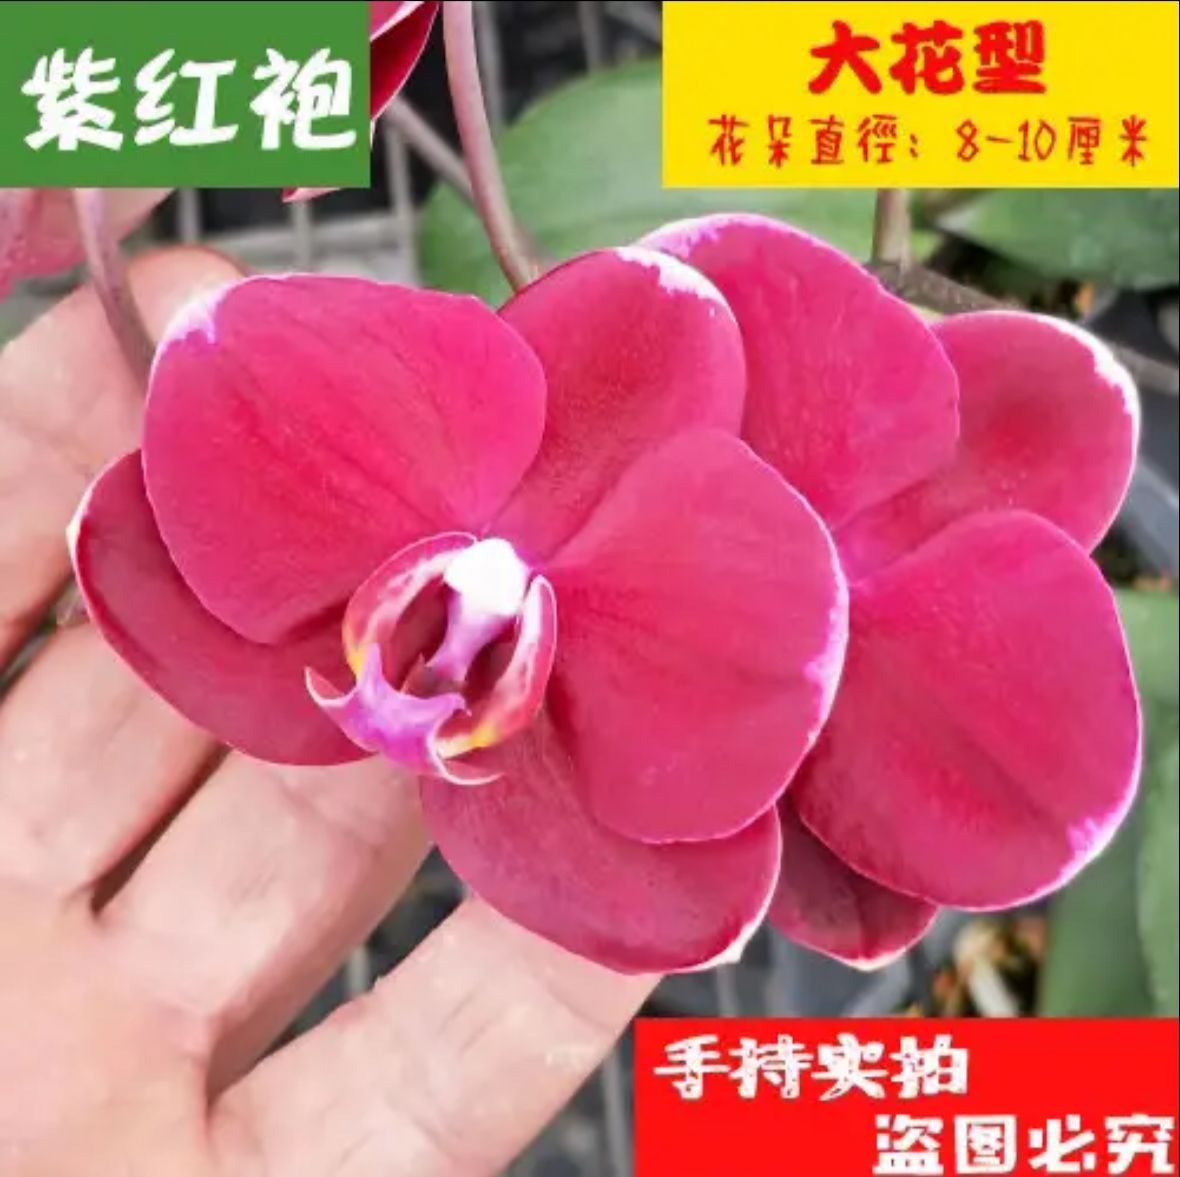 Орхидея комнатное растение